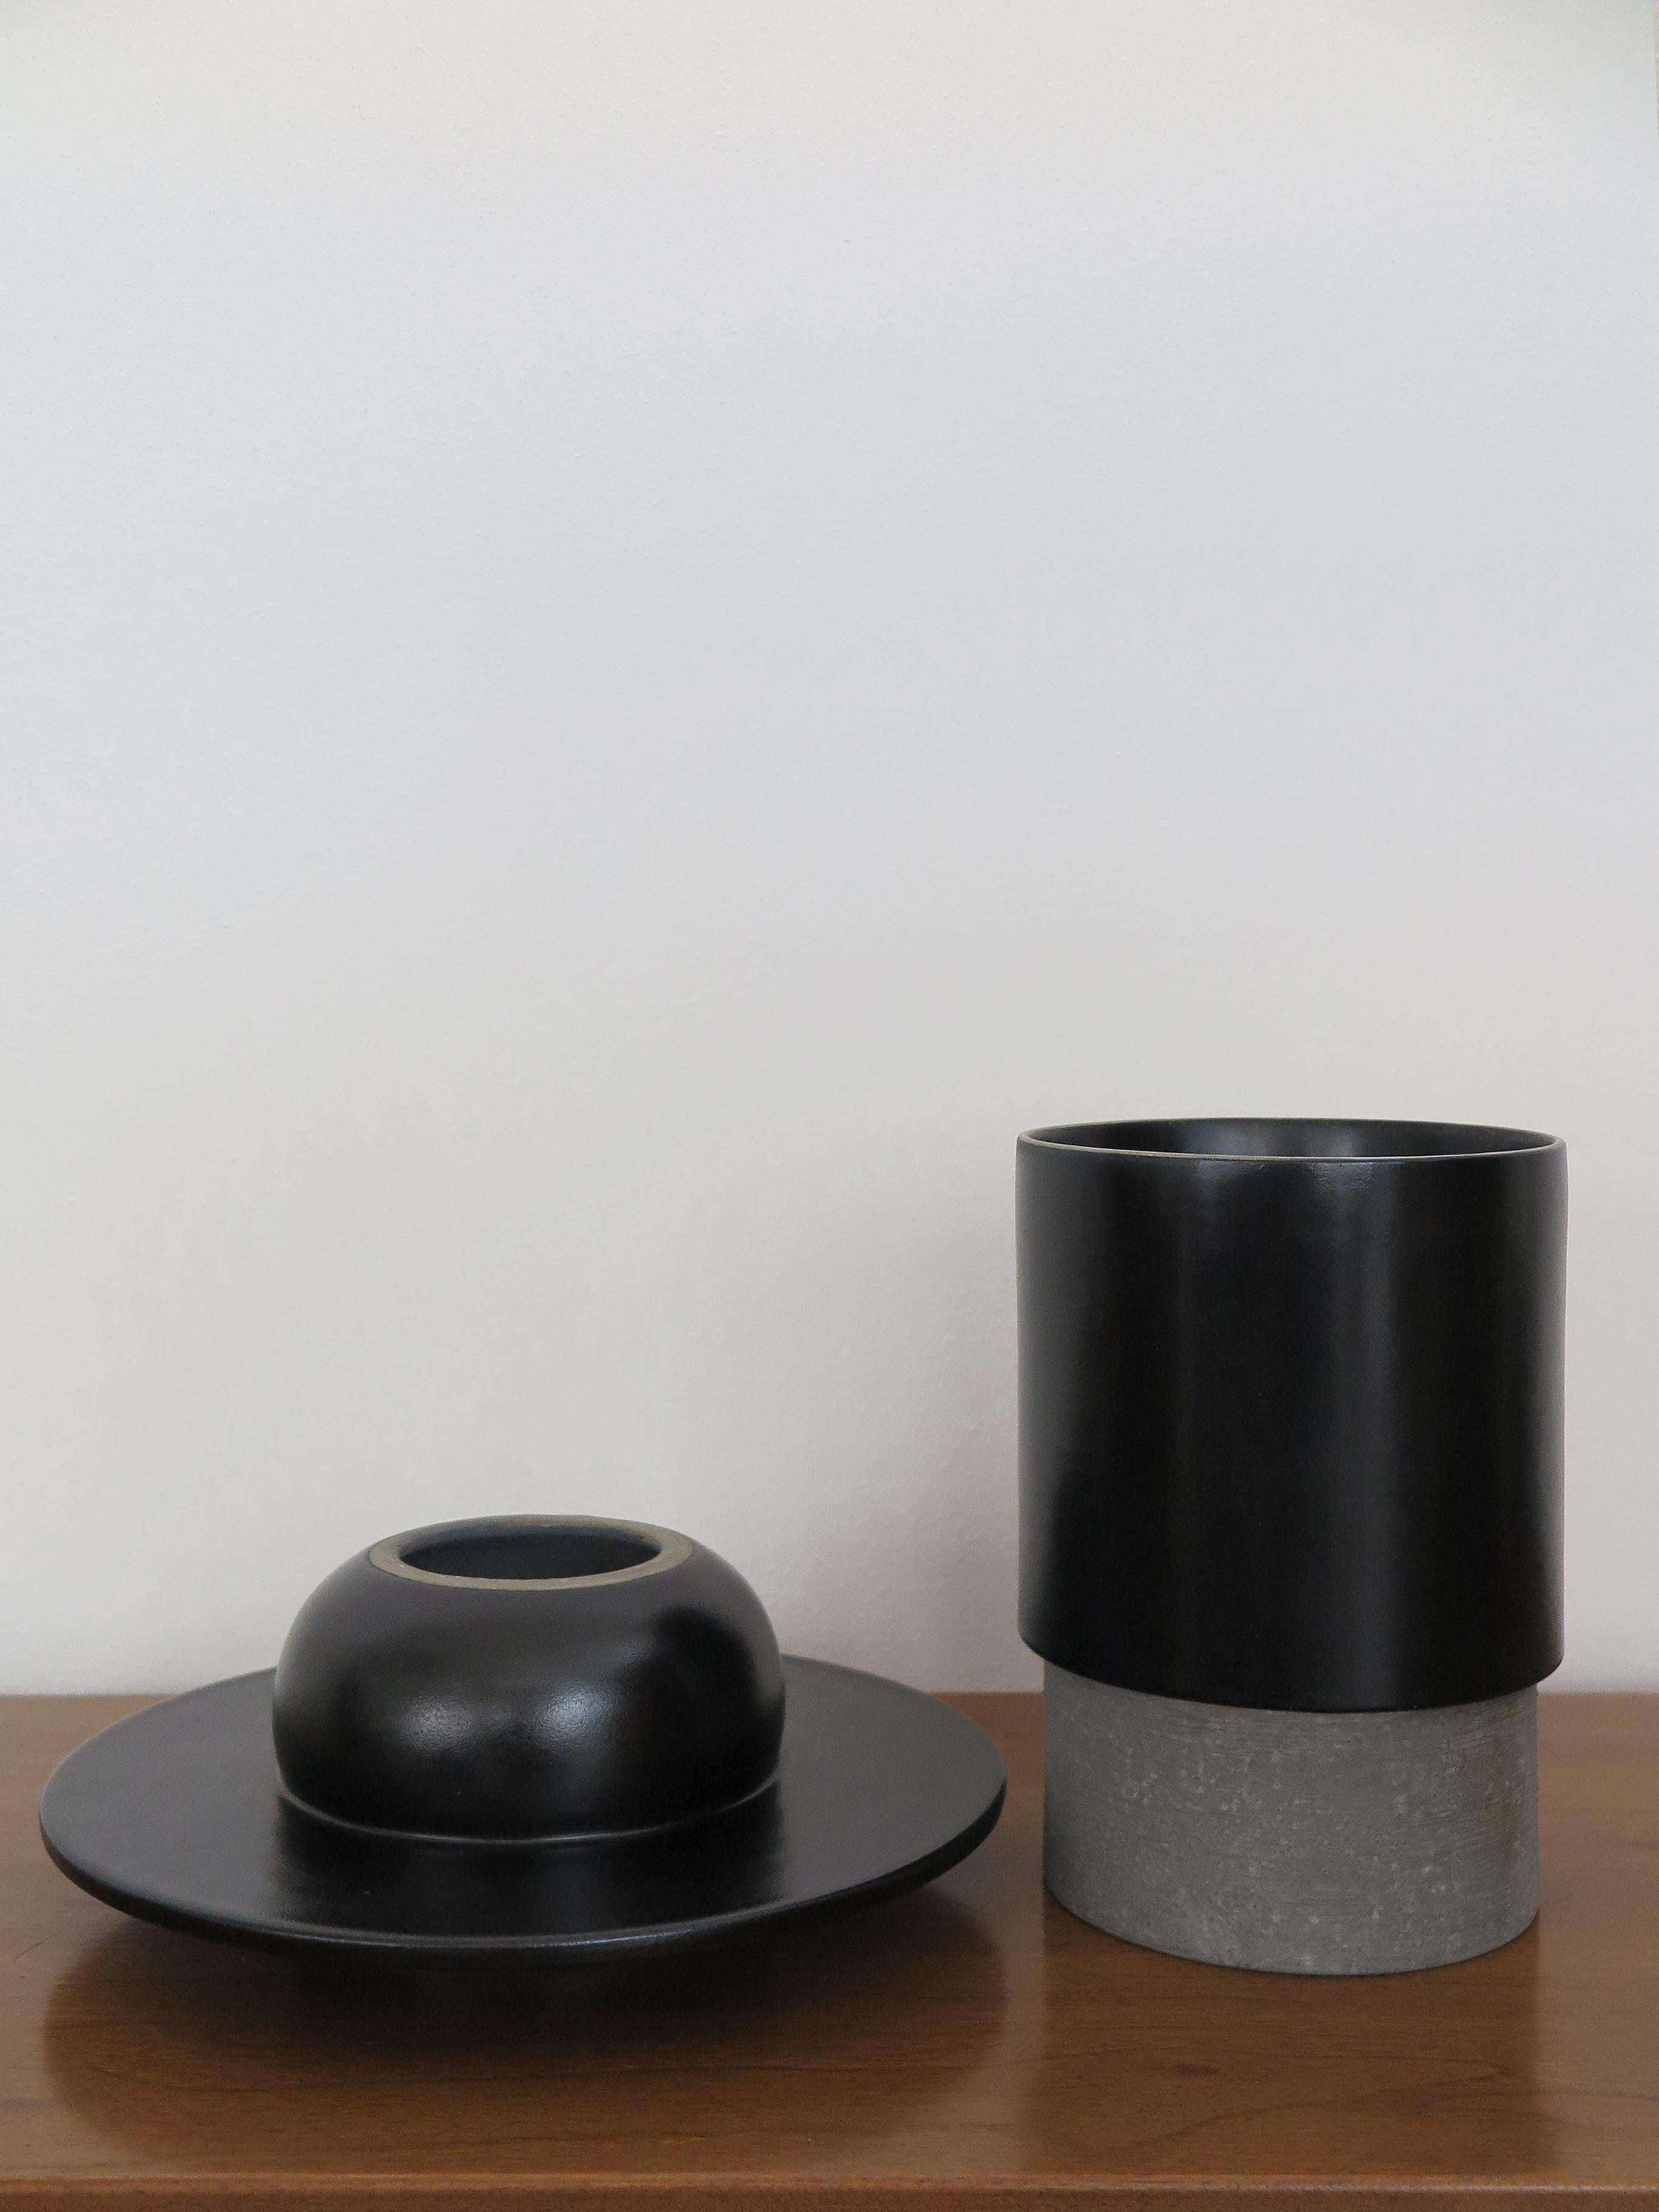 Mario Ferrarini for Bitossi Italian Ceramic Vase Sculpture Centerpiece 2010s For Sale 4